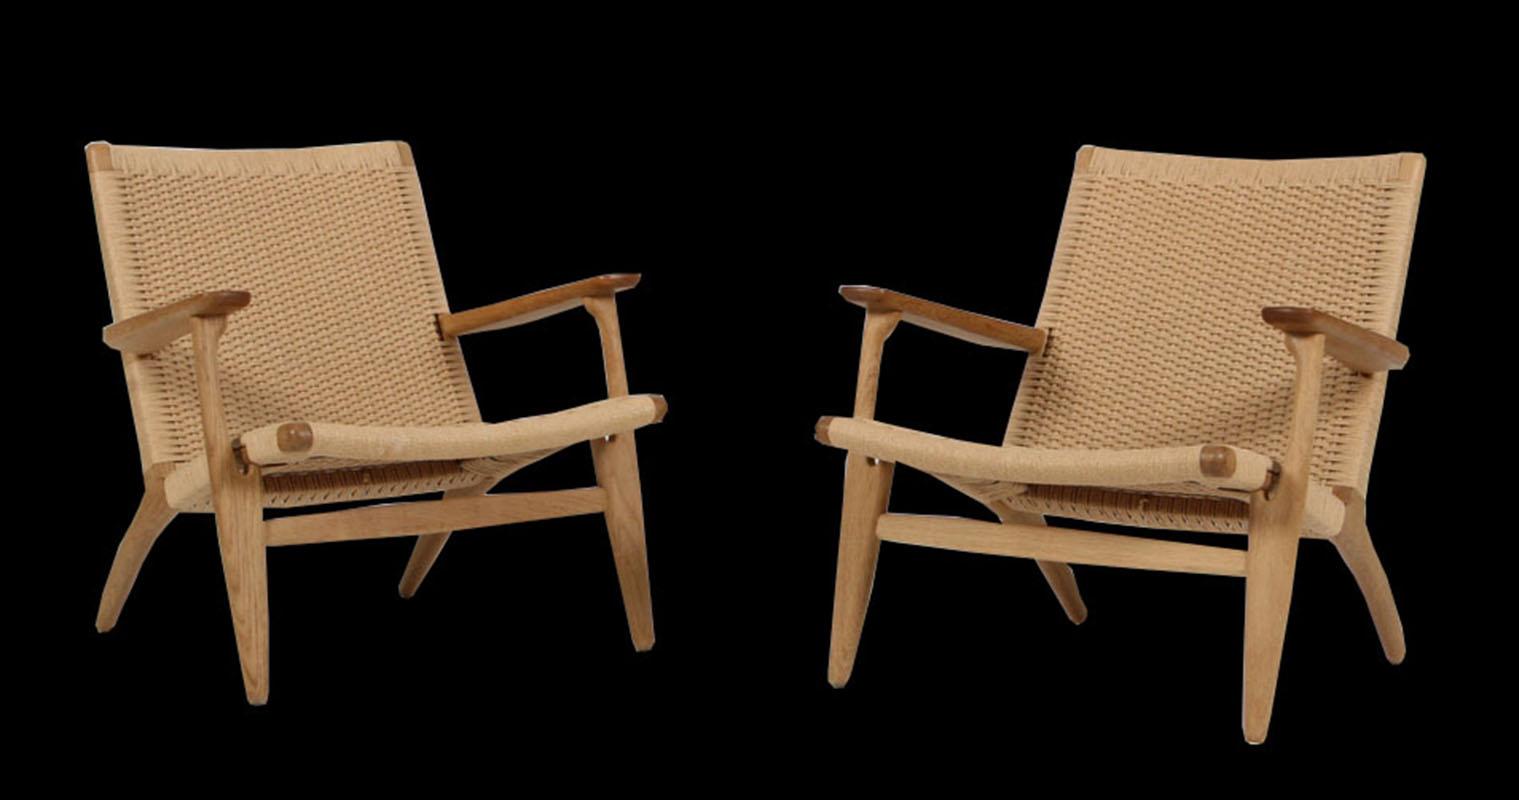 Scandinavian Modern Pair of Original CH25 Chairs  by Hans J. Wegner for Carl Hansen & Son